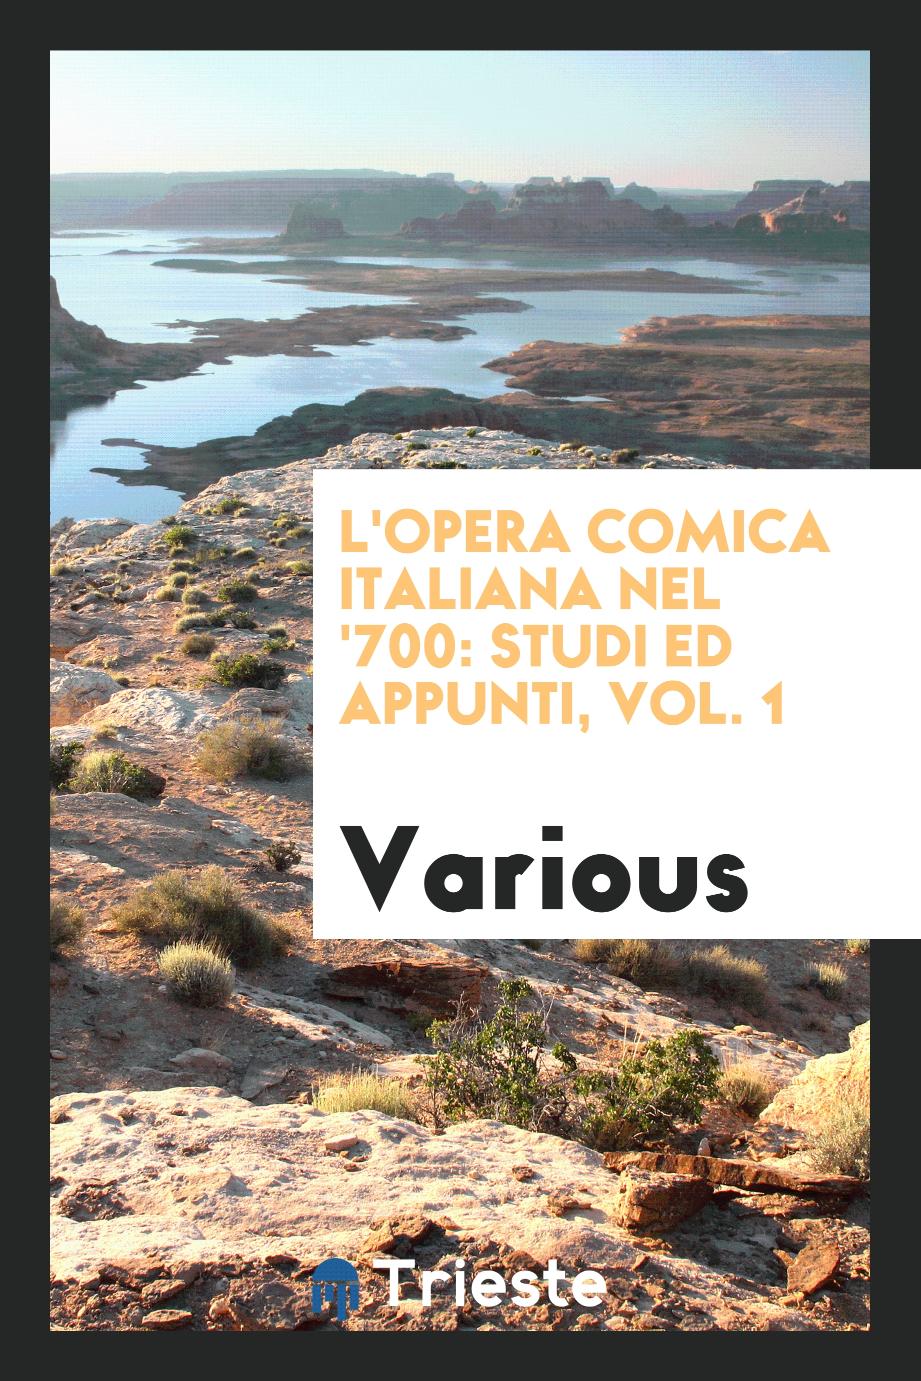 L'opera comica italiana nel '700: studi ed appunti, Vol. 1